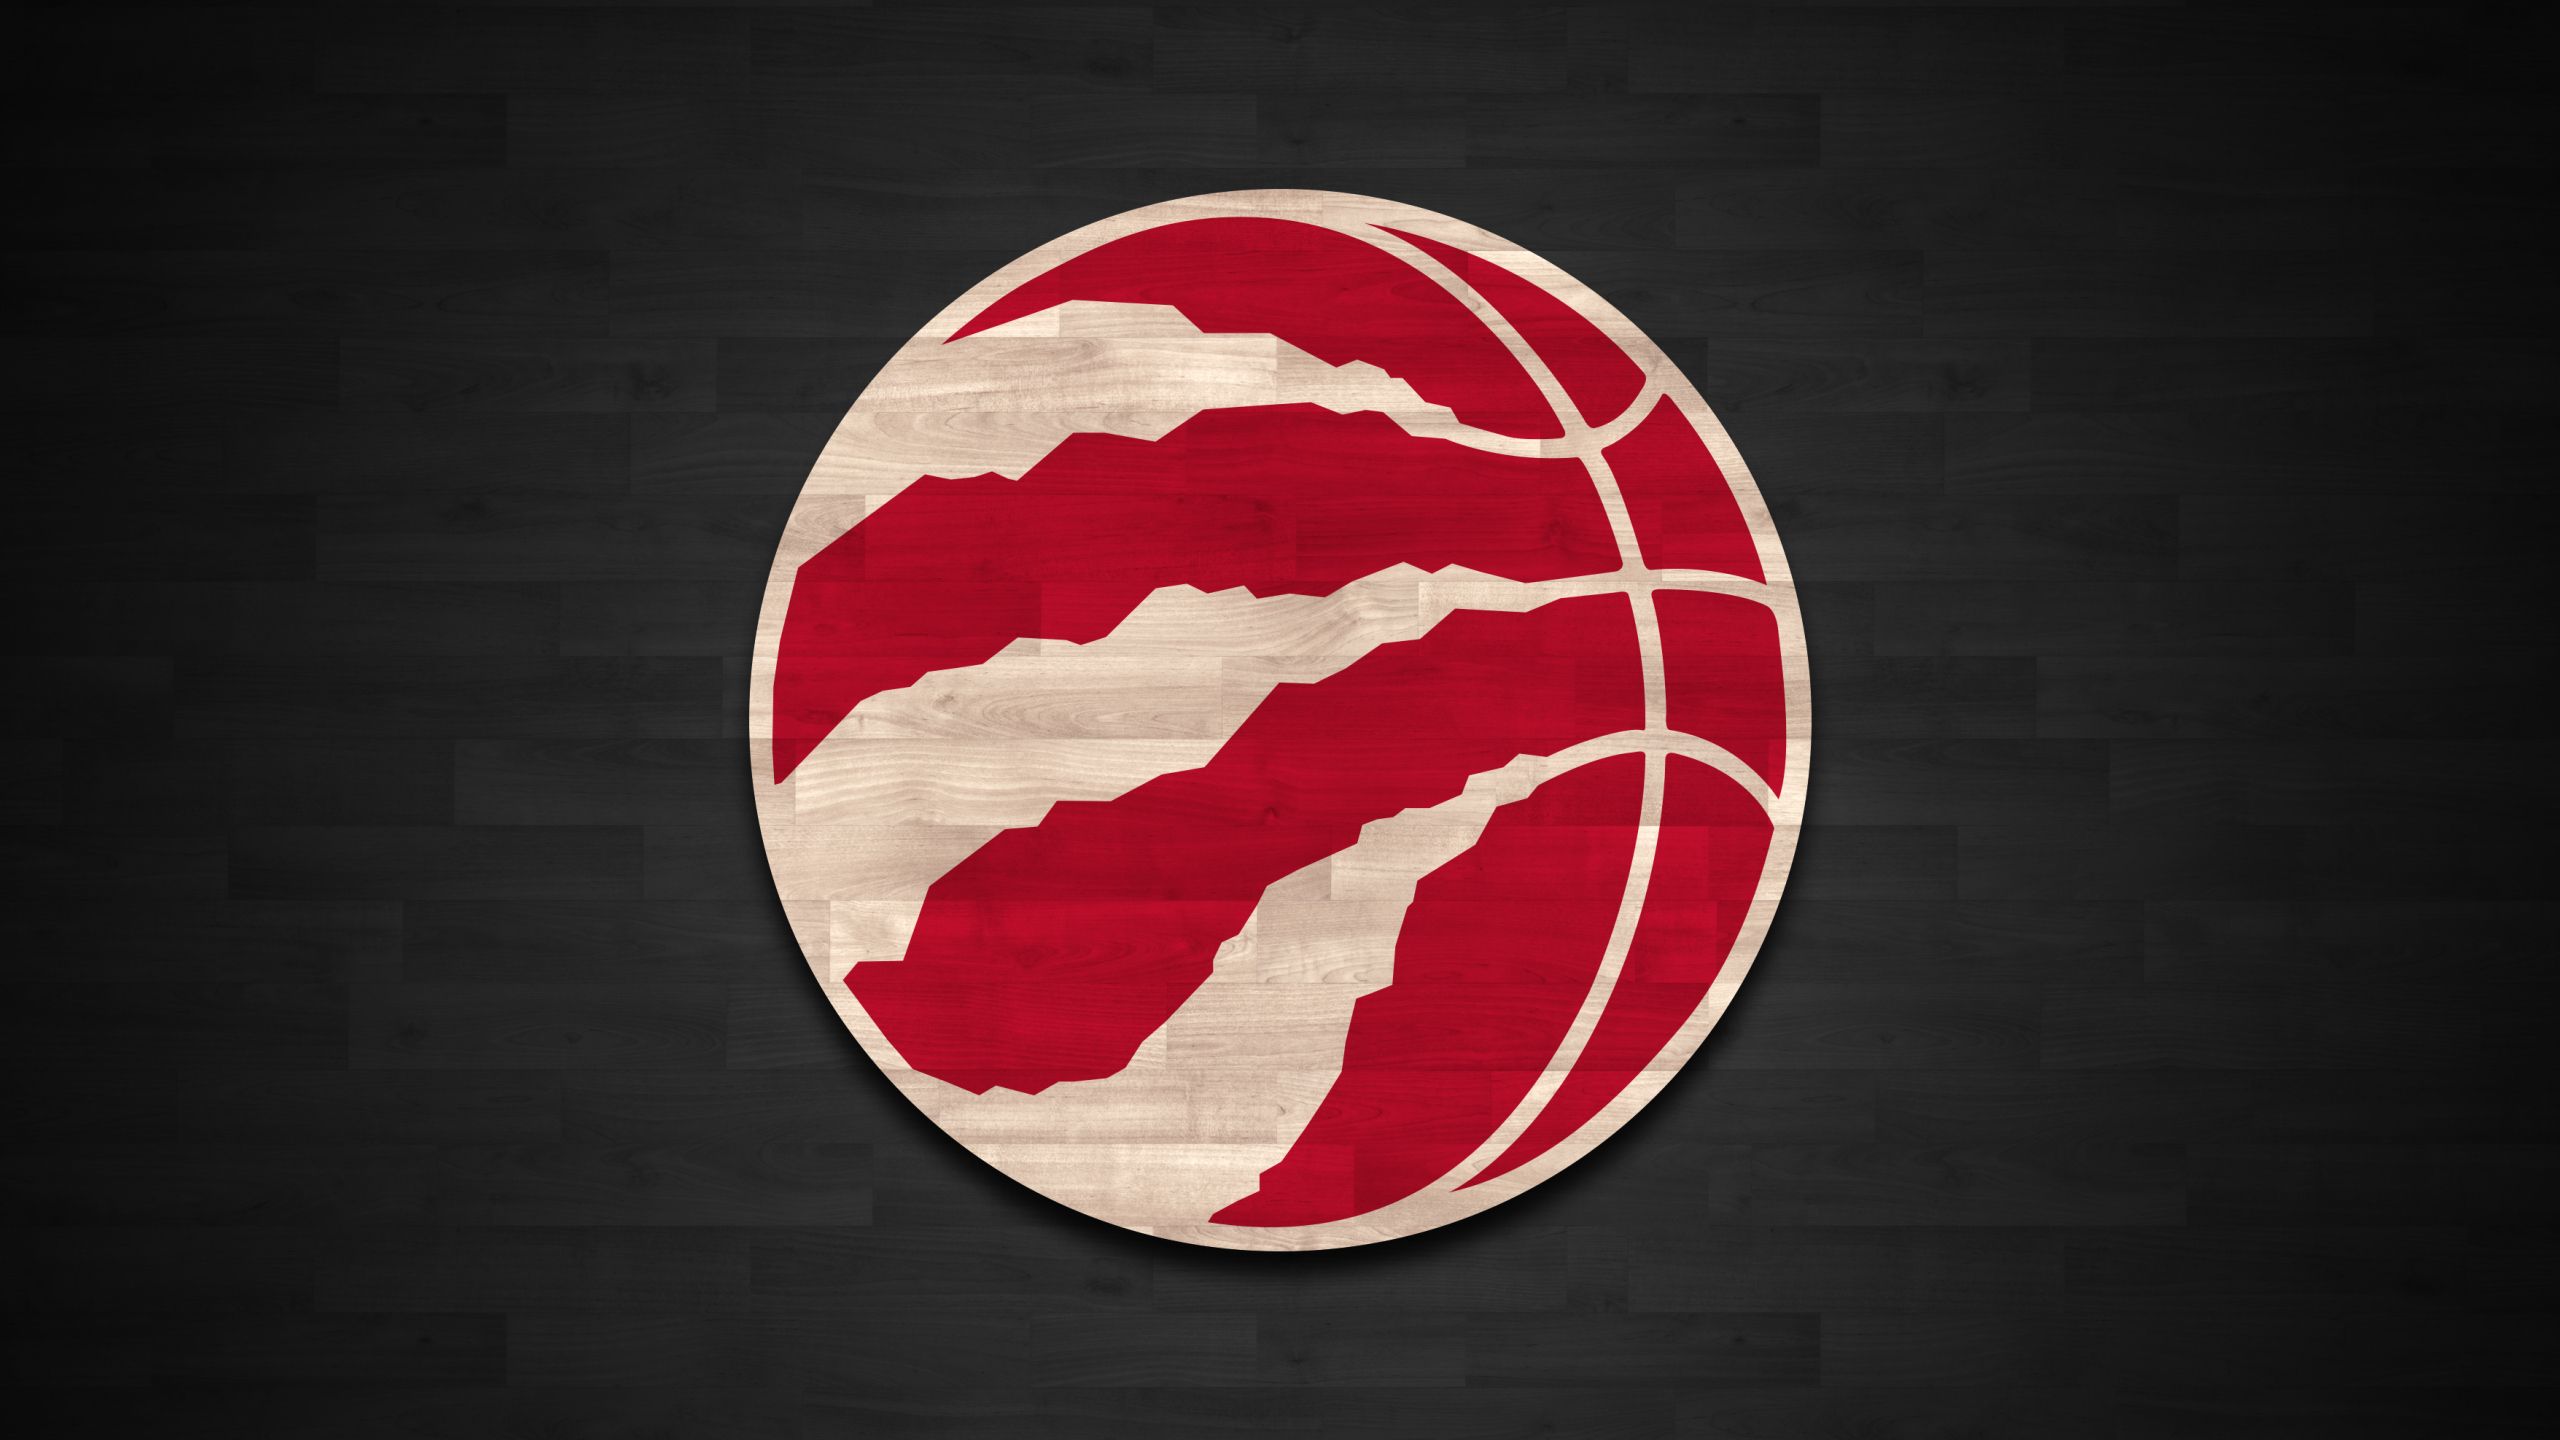 Toronto Raptors. Desktop wallpaper. 2560x1440